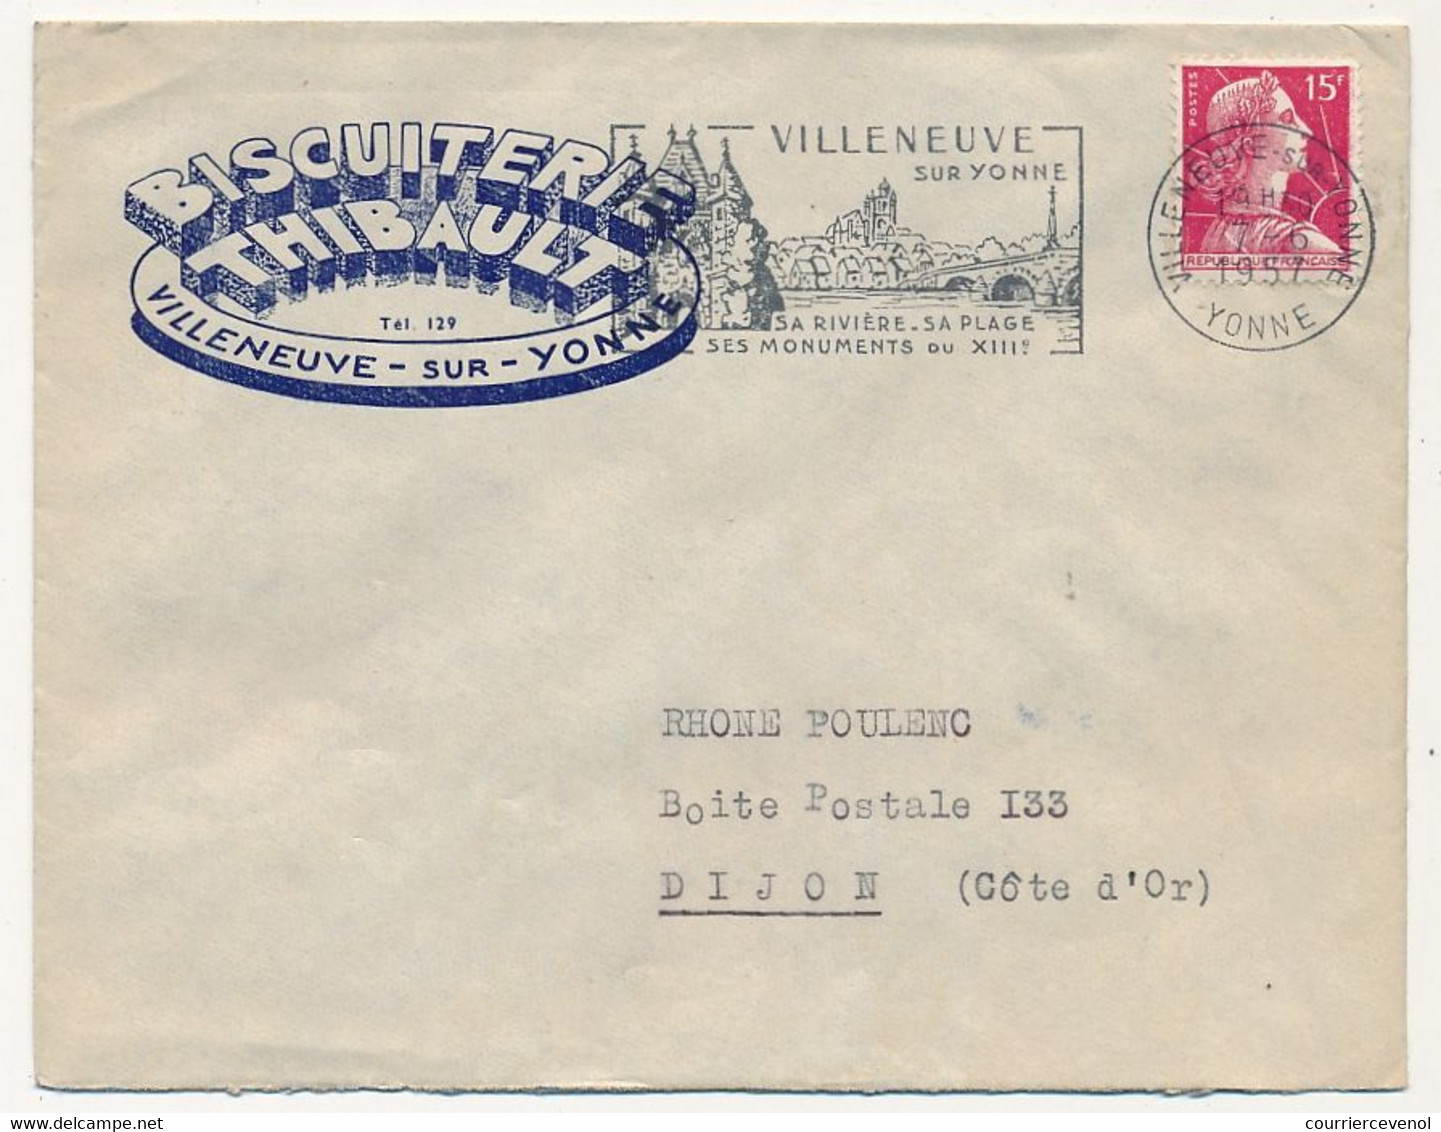 FRANCE - Env. En-tête "Biscuiterie Thibault - Villeneuve S/Yonne" Affr Muller 1957 - Food